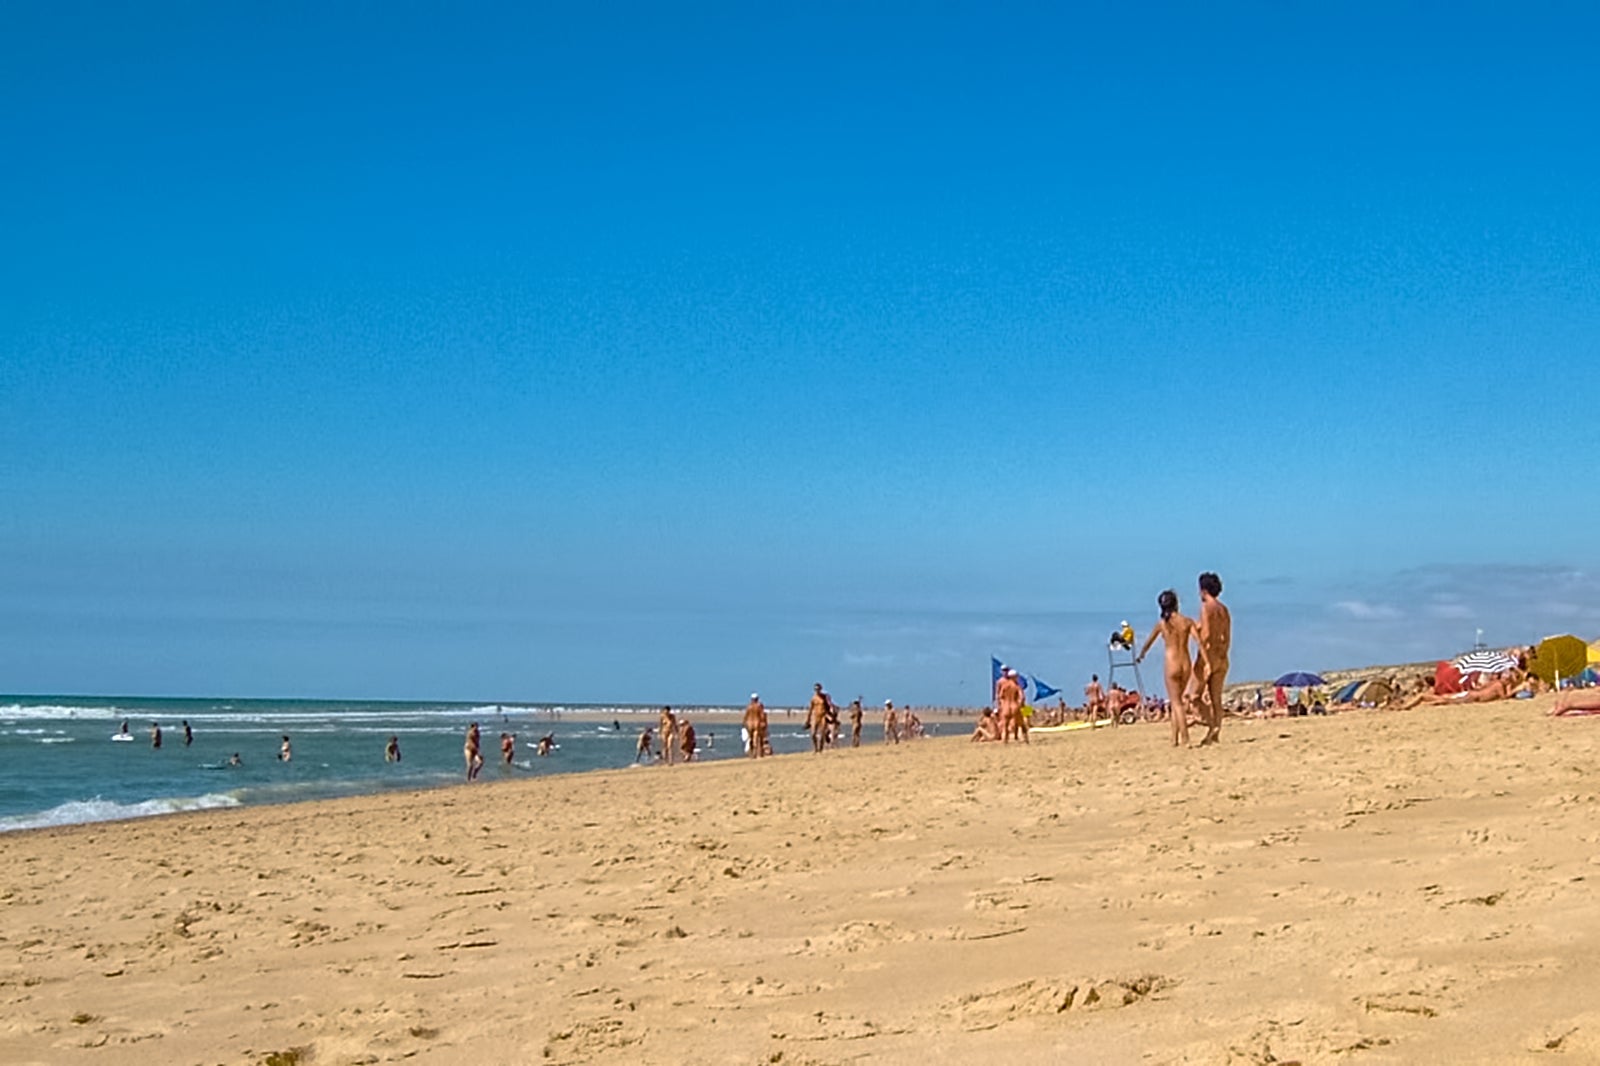 french nude beach photos